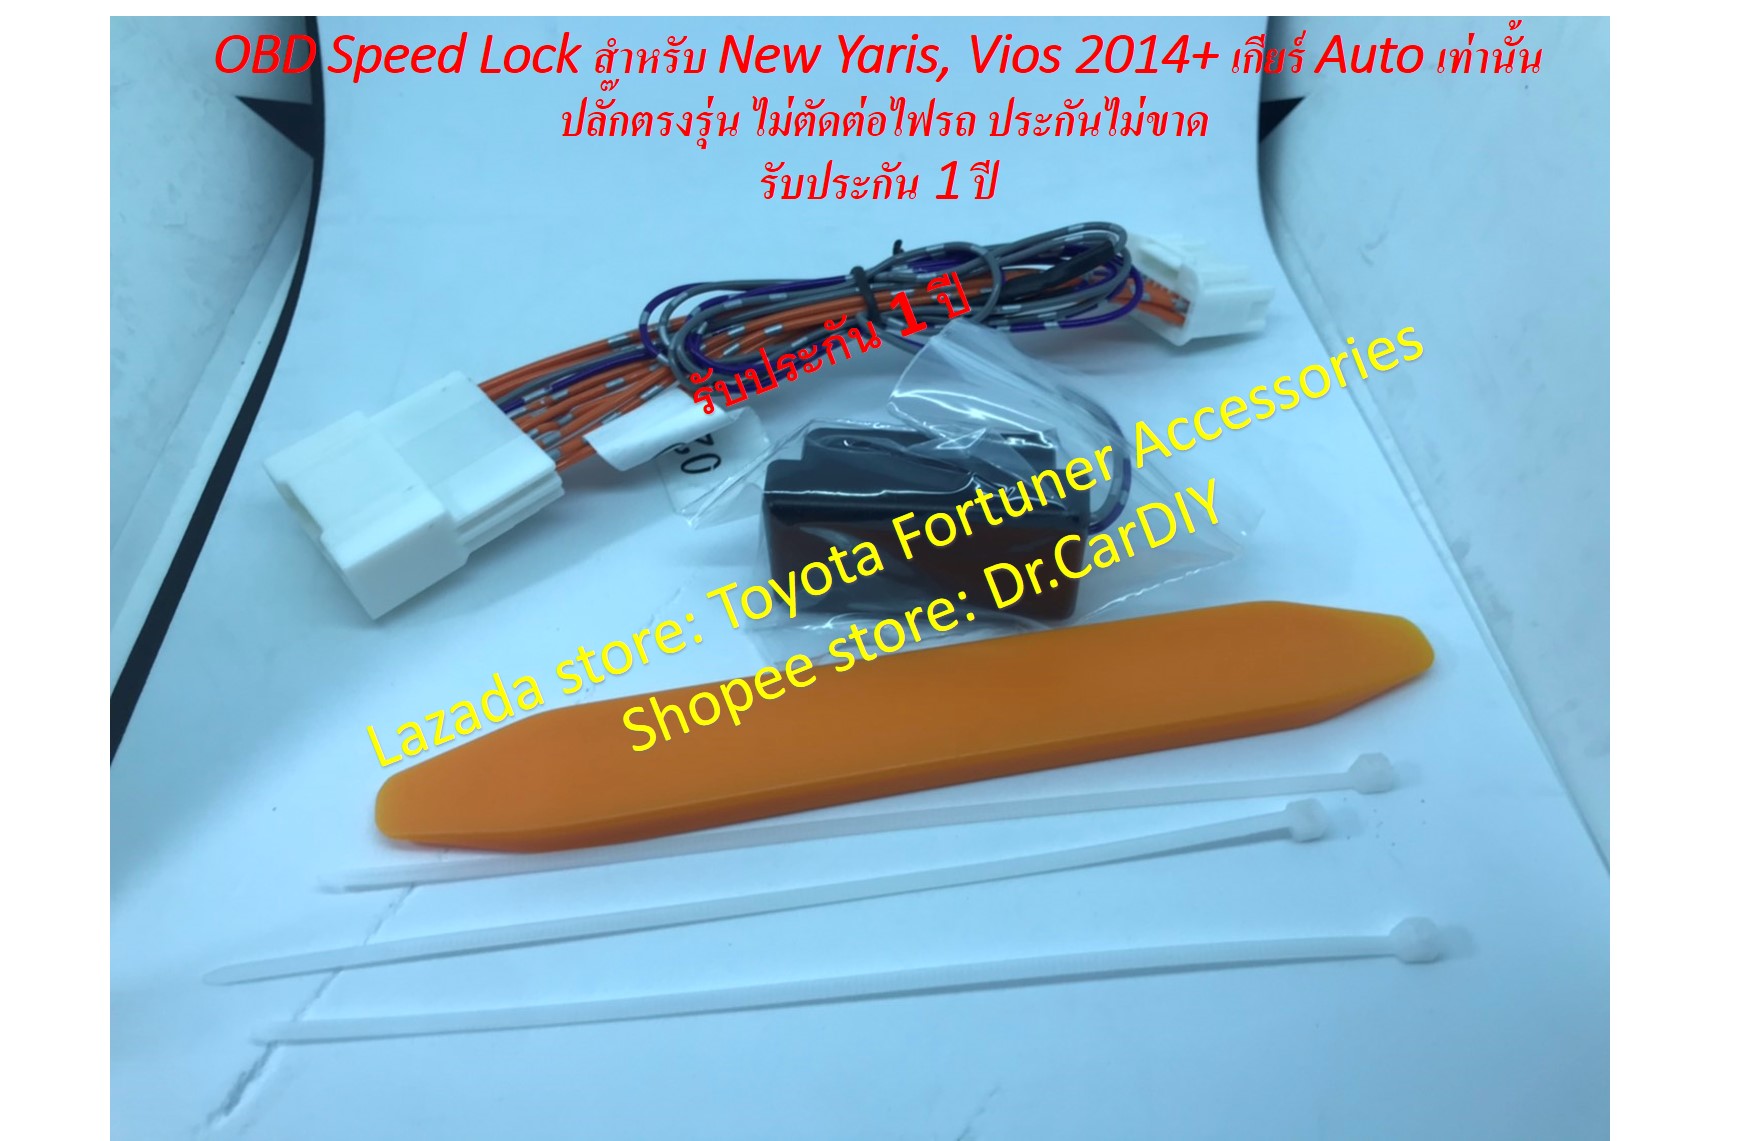 ออโต้ล๊อค OBD SPEED LOCK สำหรับ NEW VIOS NEW YARIS ปี 2014+ เกียร์ Auto เท่านั้น